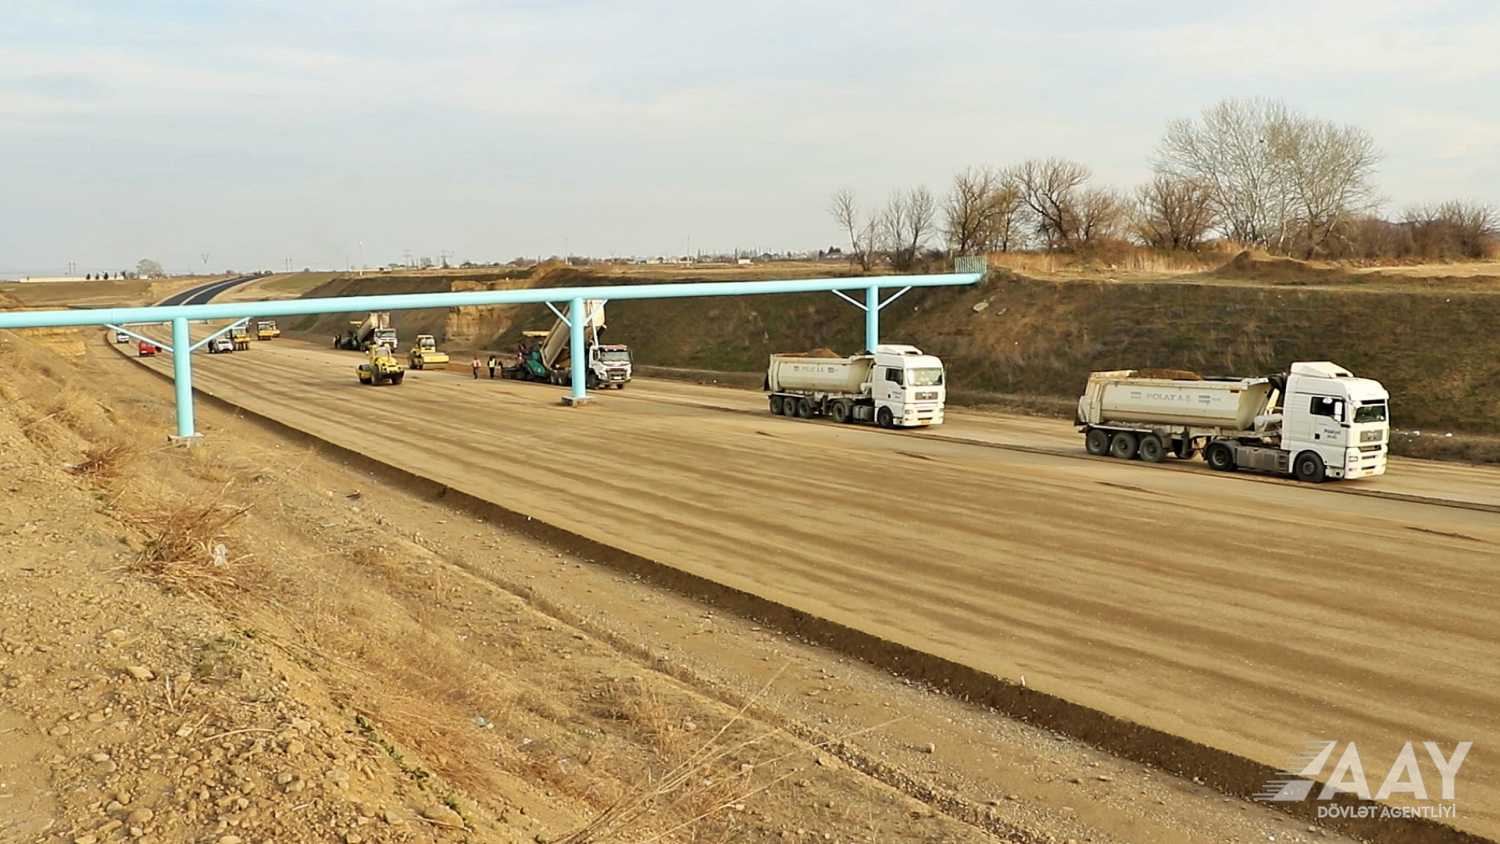 Bakı-Qazax yolunun genişləndirilməsi işləri ilin sonuna qədər yekunlaşacaq - FOTO/VİDEO 